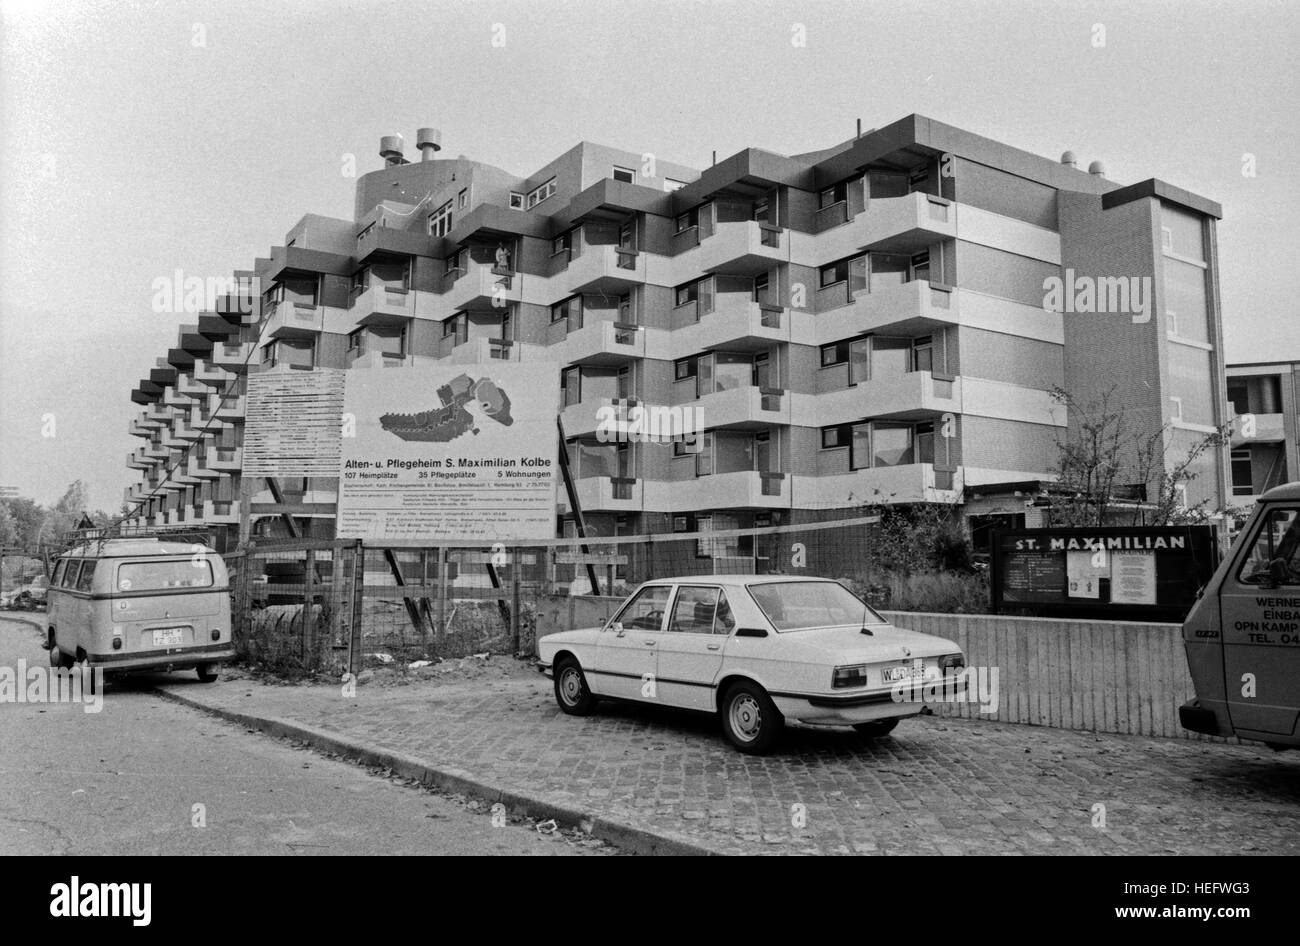 Ein Platz an der Sonne, Fernsehlotterie, Deutschland 1983, das Alters- und Pflegeheim S. Maximilian Kolbe in Hamburg Stock Photo